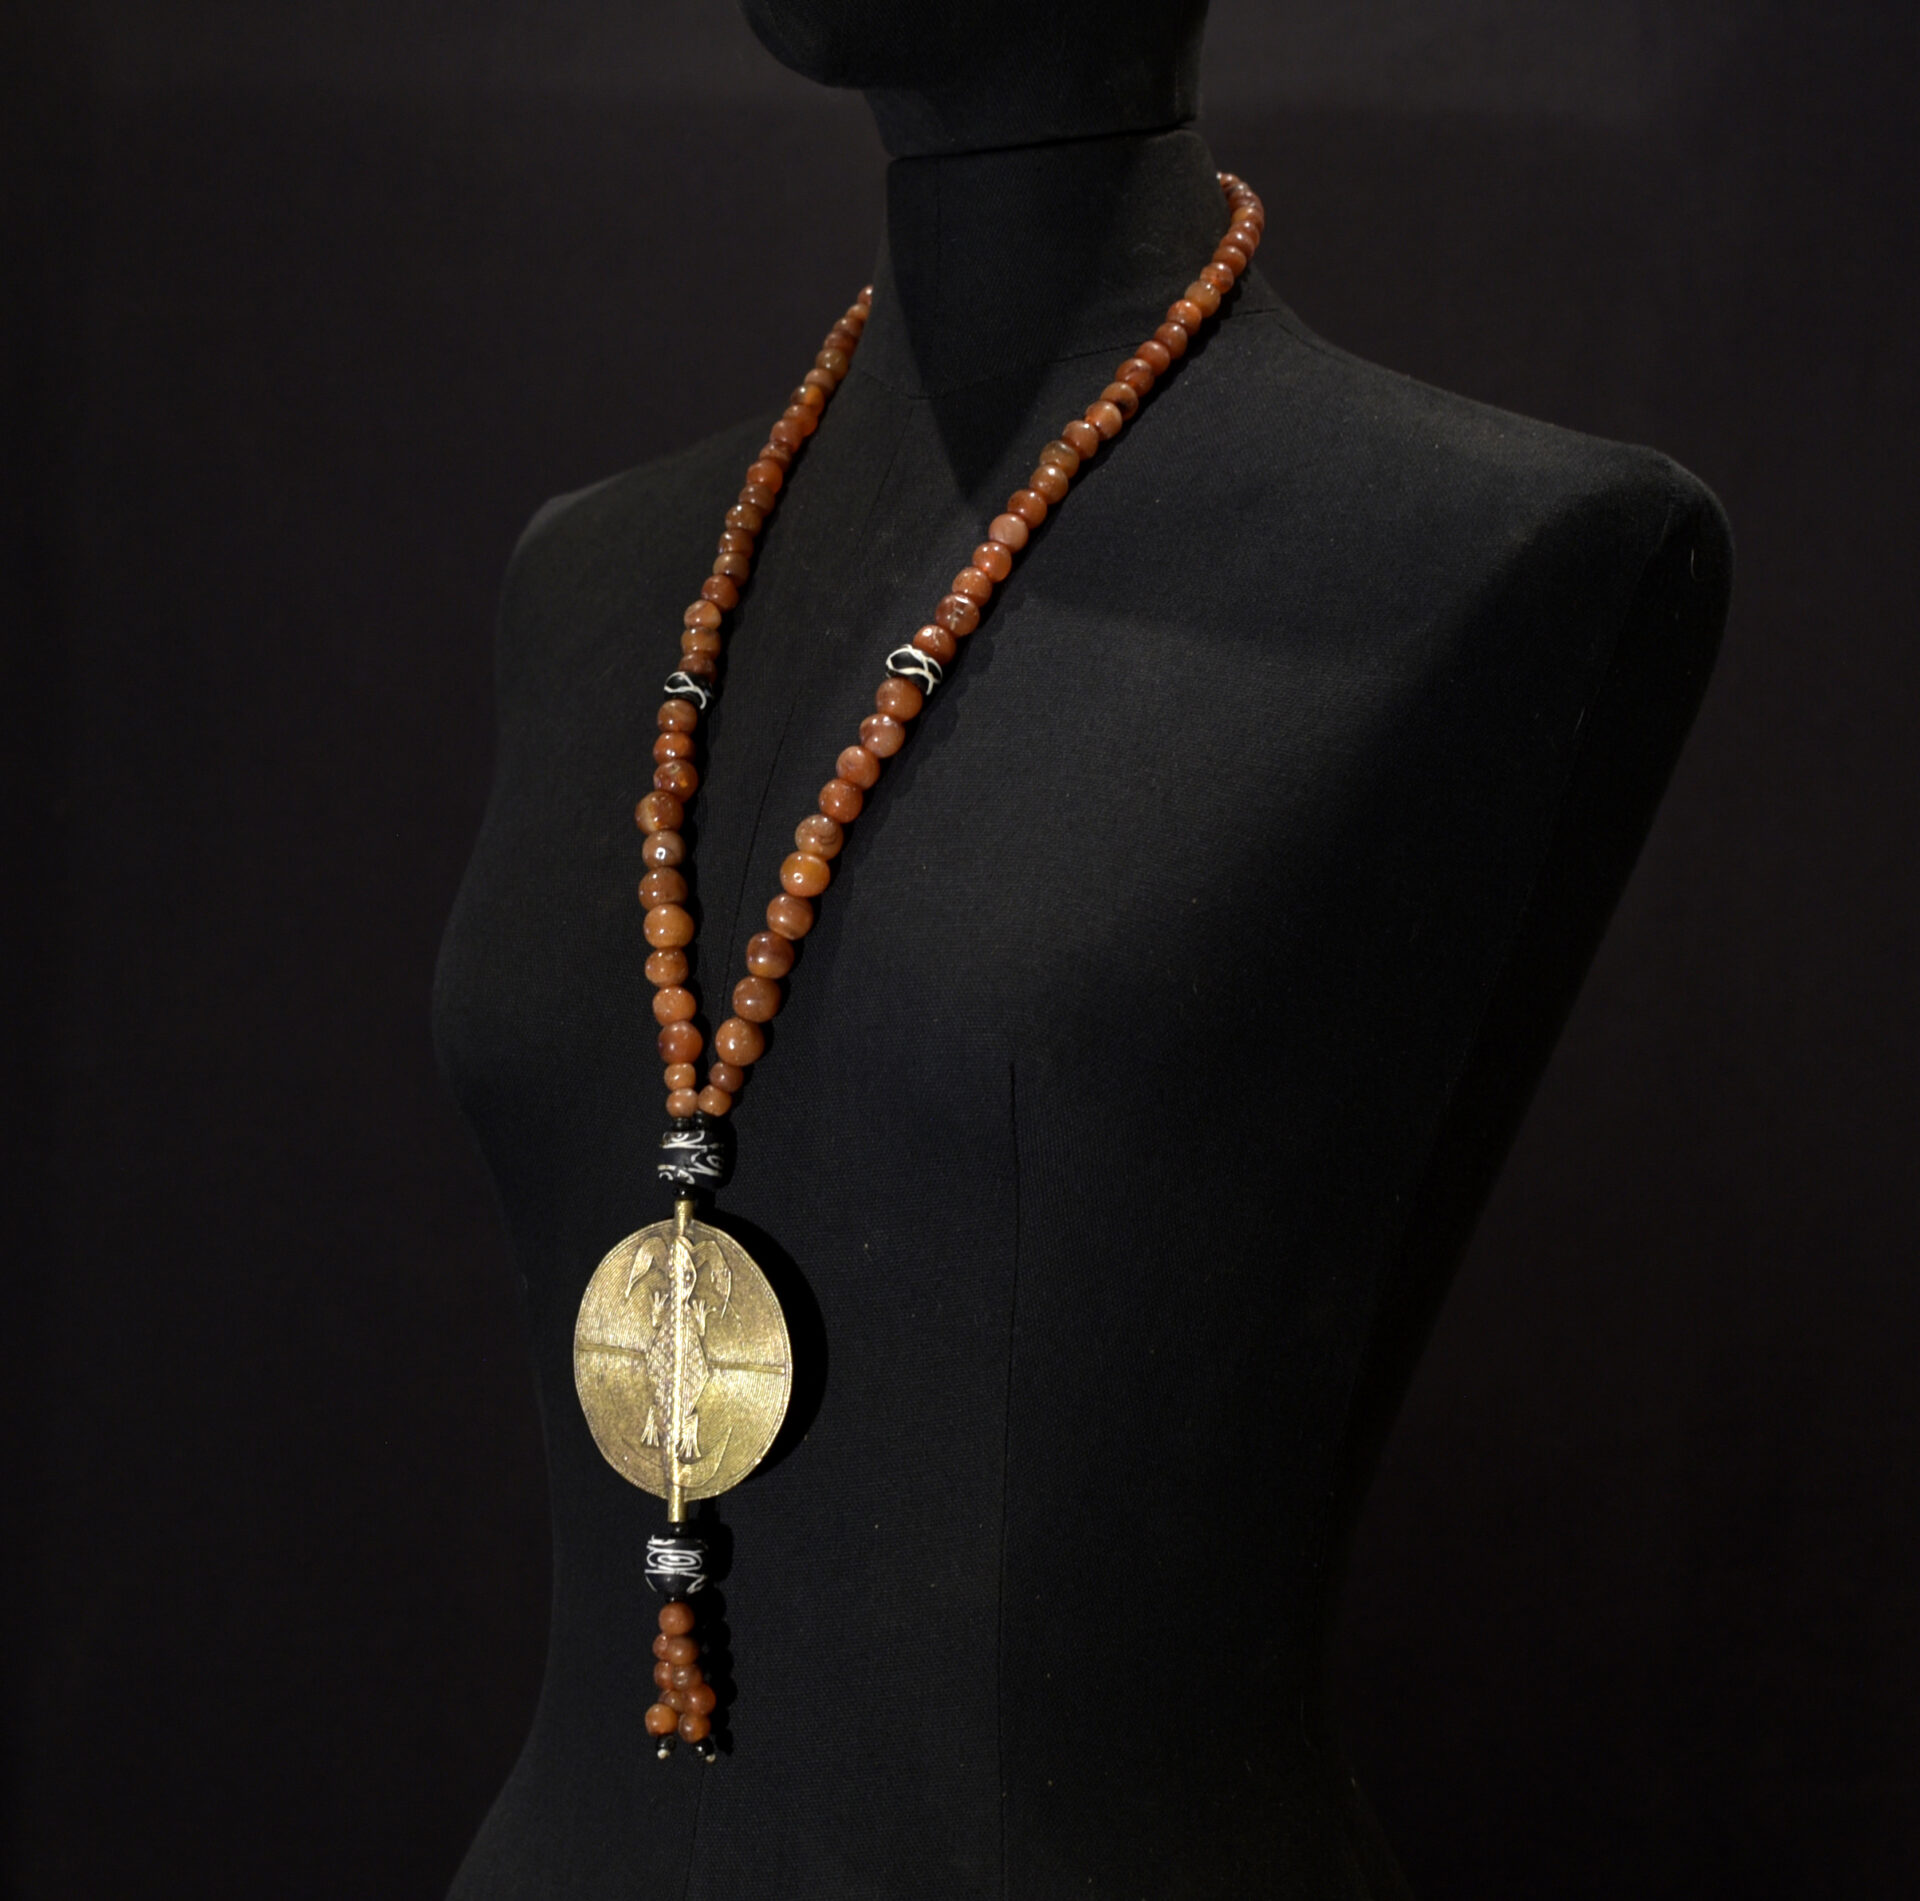 Large Beautiful Baule Necklace – Cote d’Ivoire / Ivory Coast